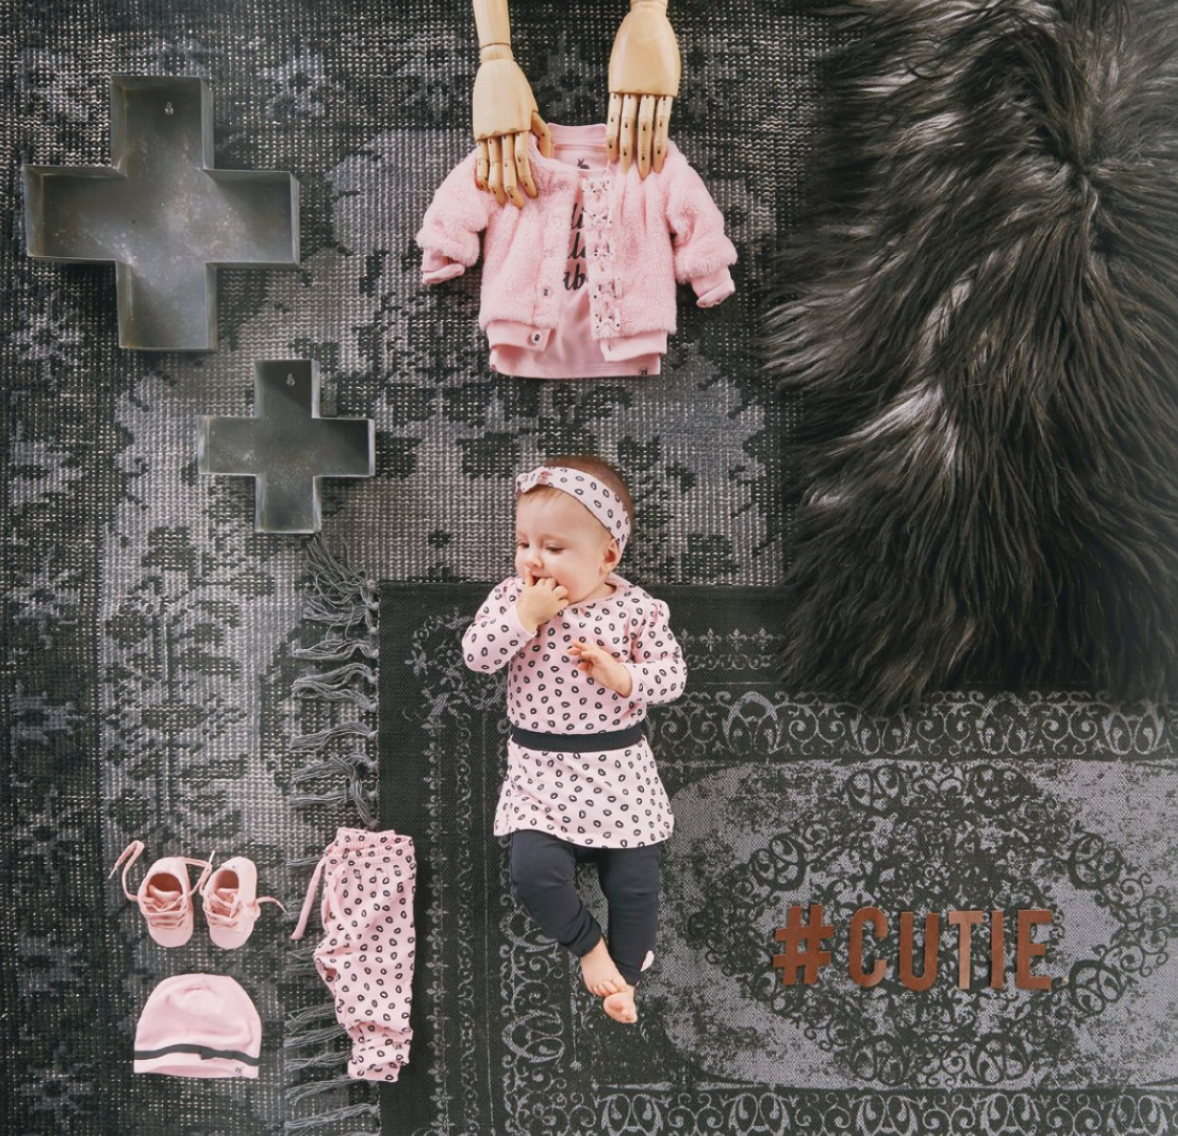 Beurs Oplossen Hoofd Z8 Newborn collectie winter '17/'18 • Mommyhood